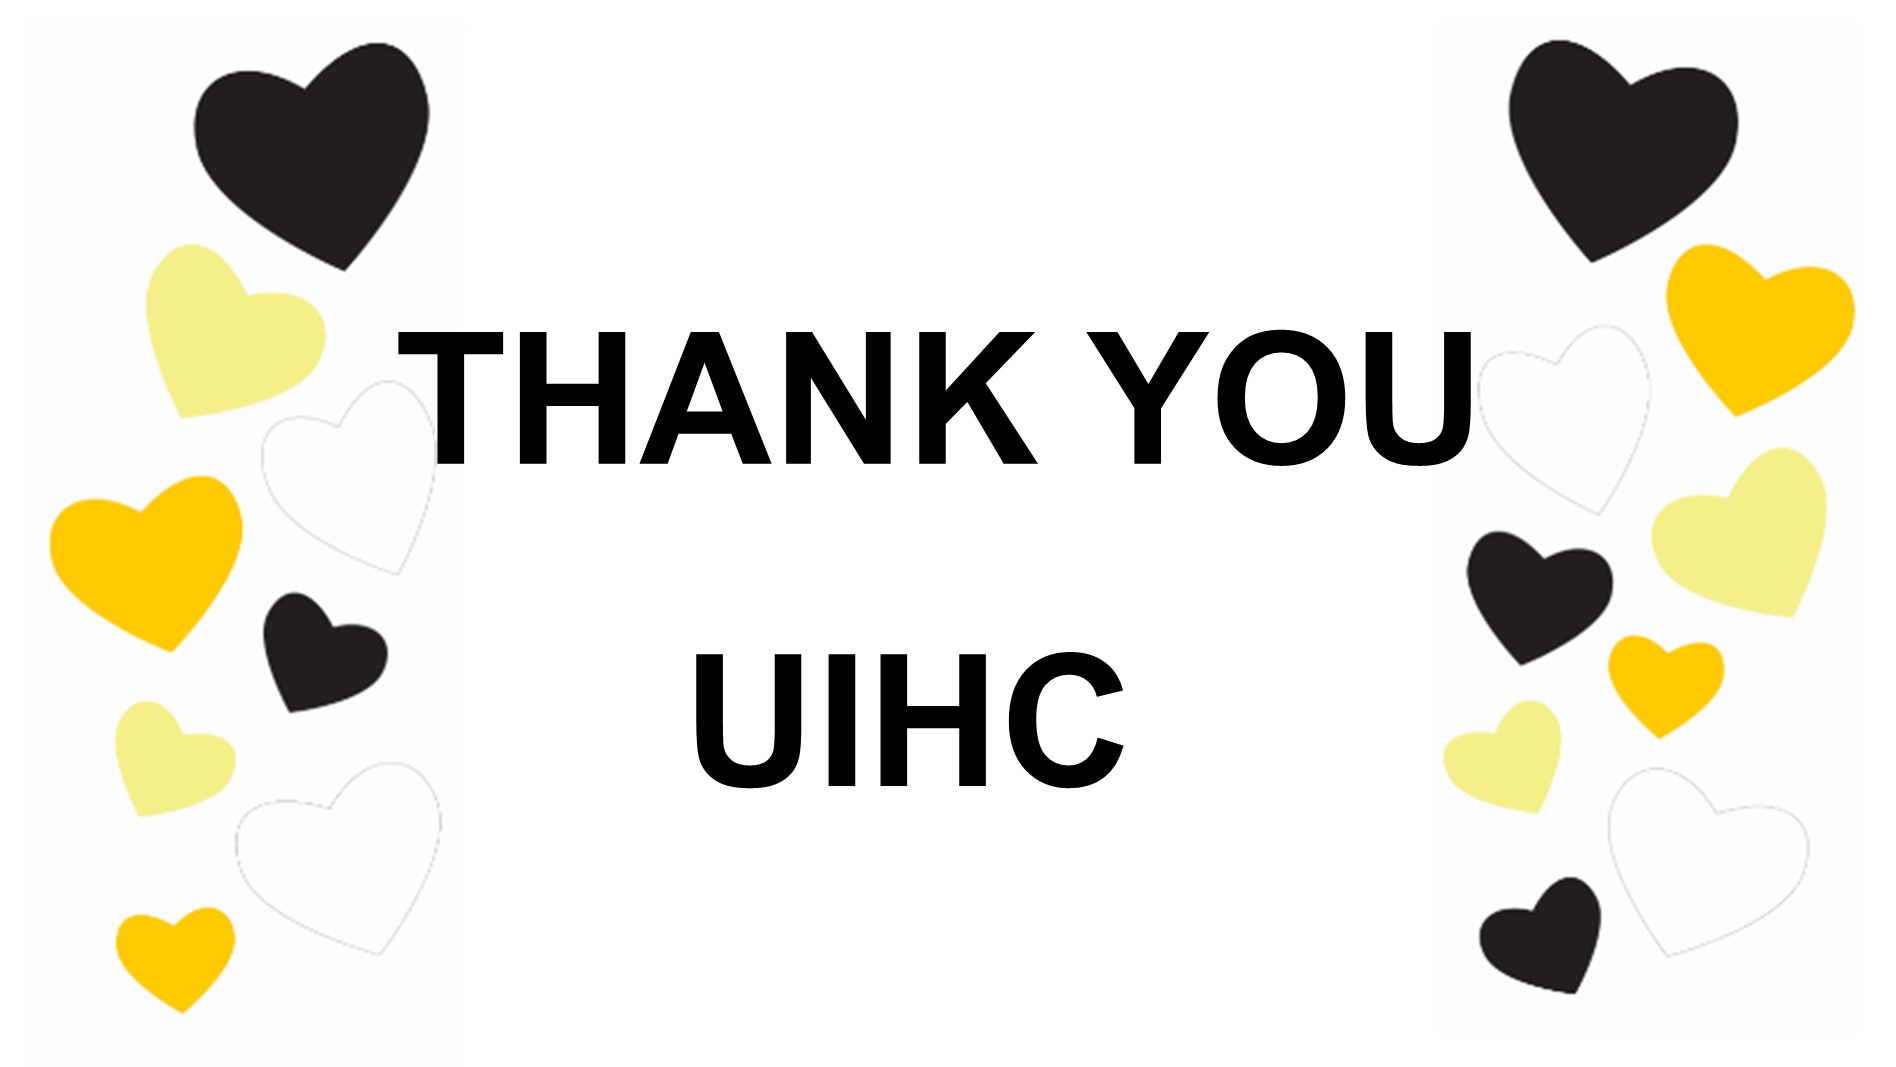 Thank you UIHC